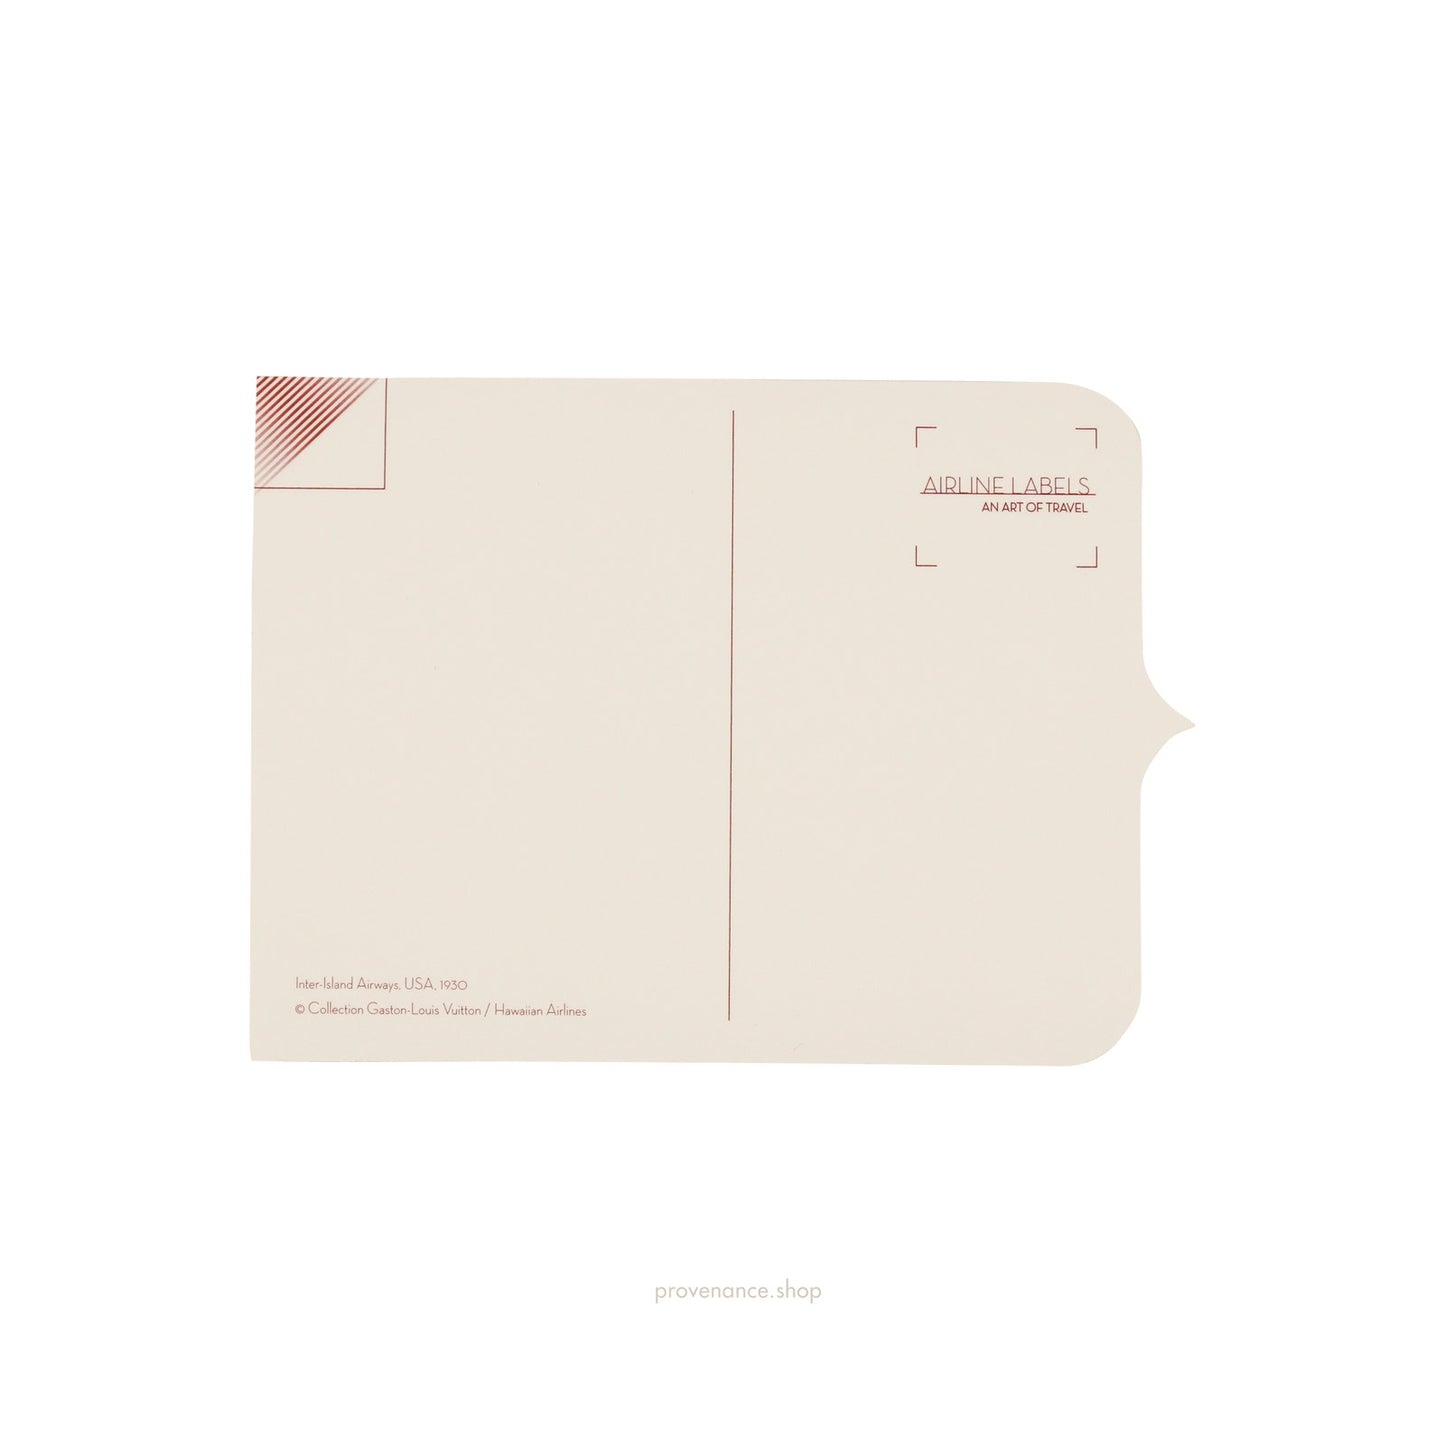 🔴 Louis Vuitton Airline Label Postcard Sticker- INTER-ISLAND AIRWAYS